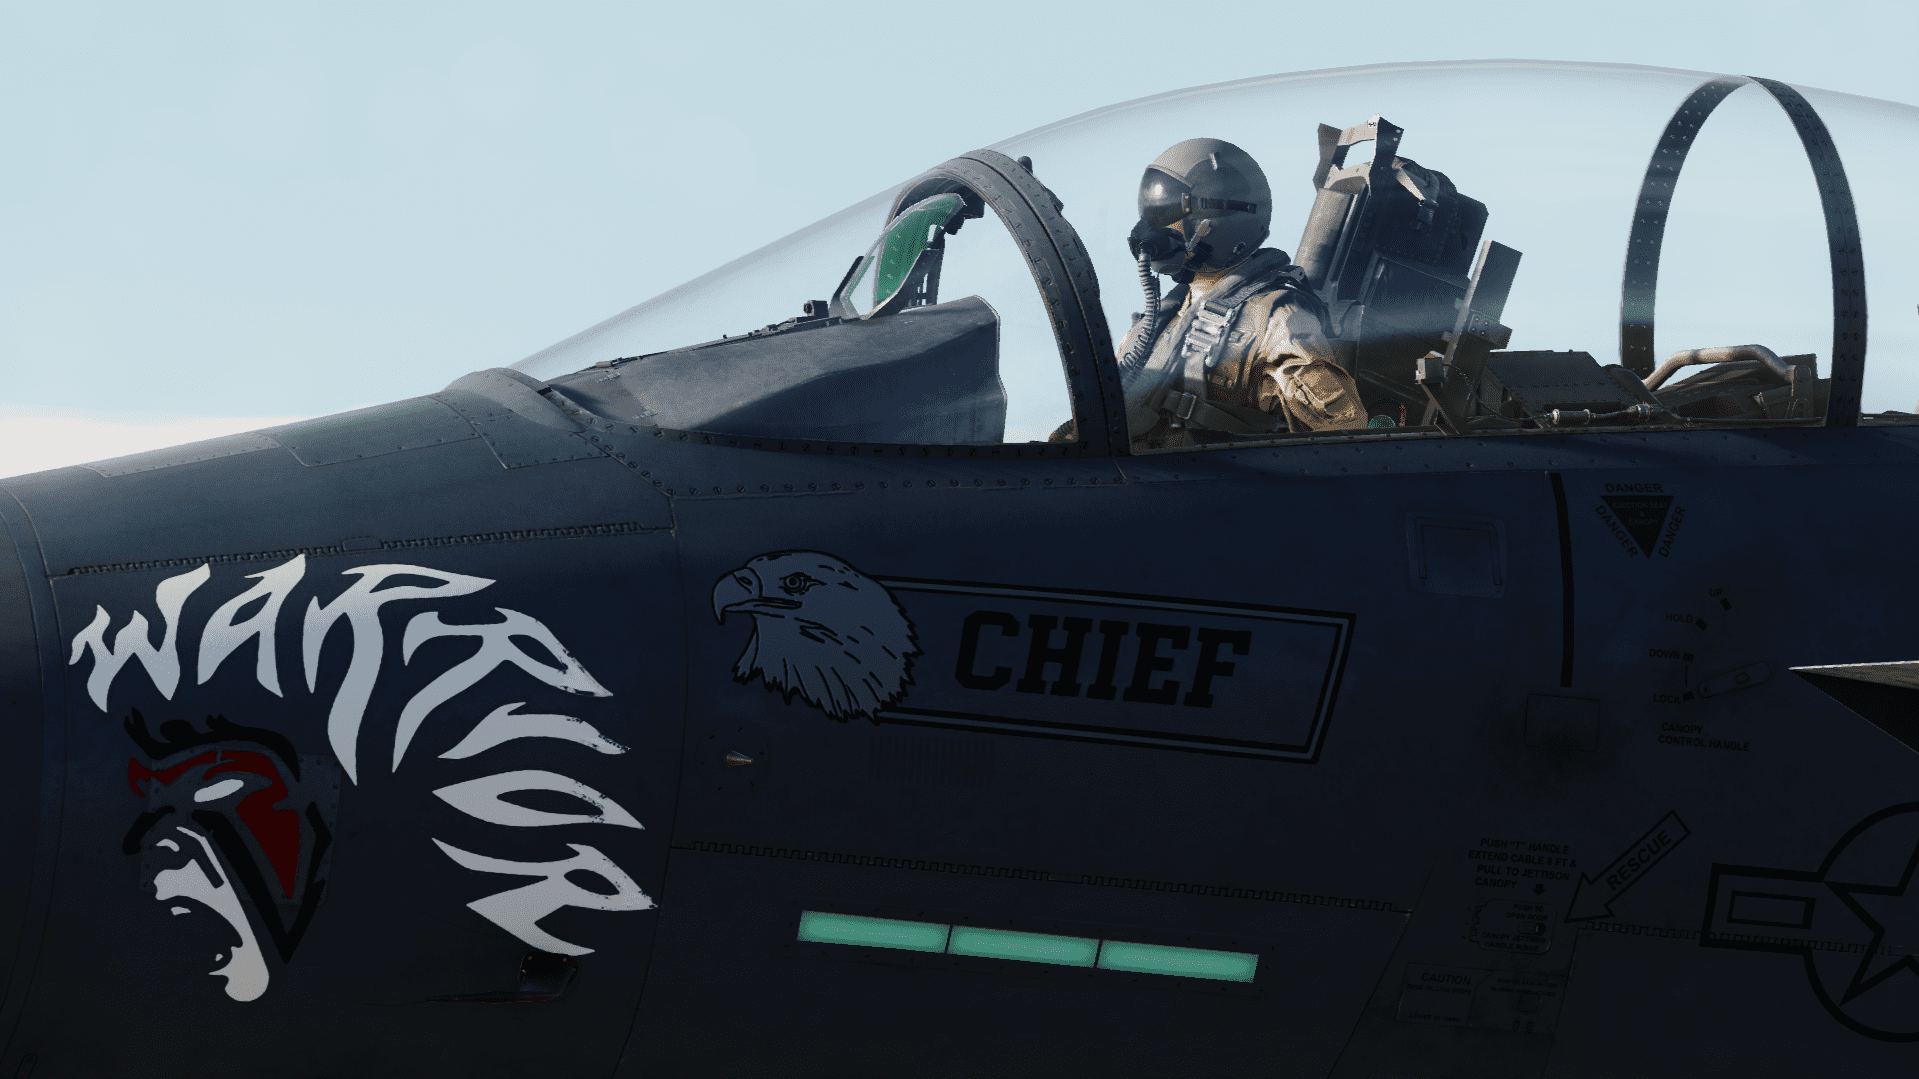 F-15E Strike eagle LN 91-314 "Chief"